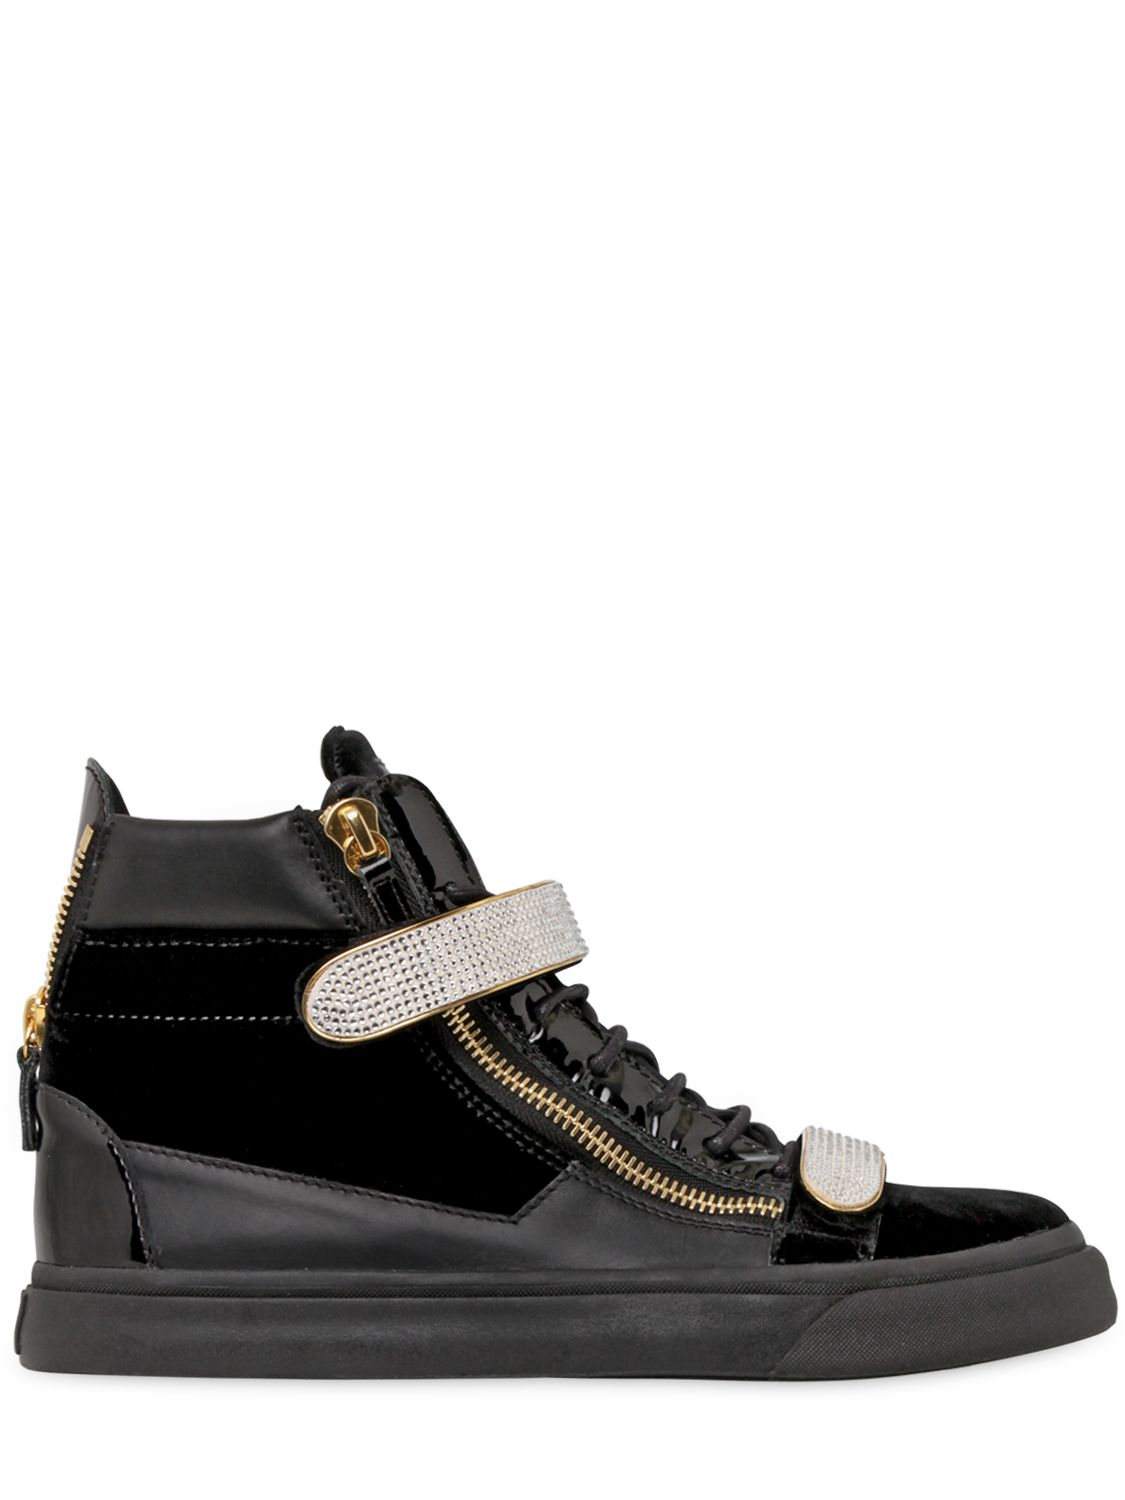 Giuseppe Zanotti Velvet Leather High Top Sneakers in Black for Men - Lyst